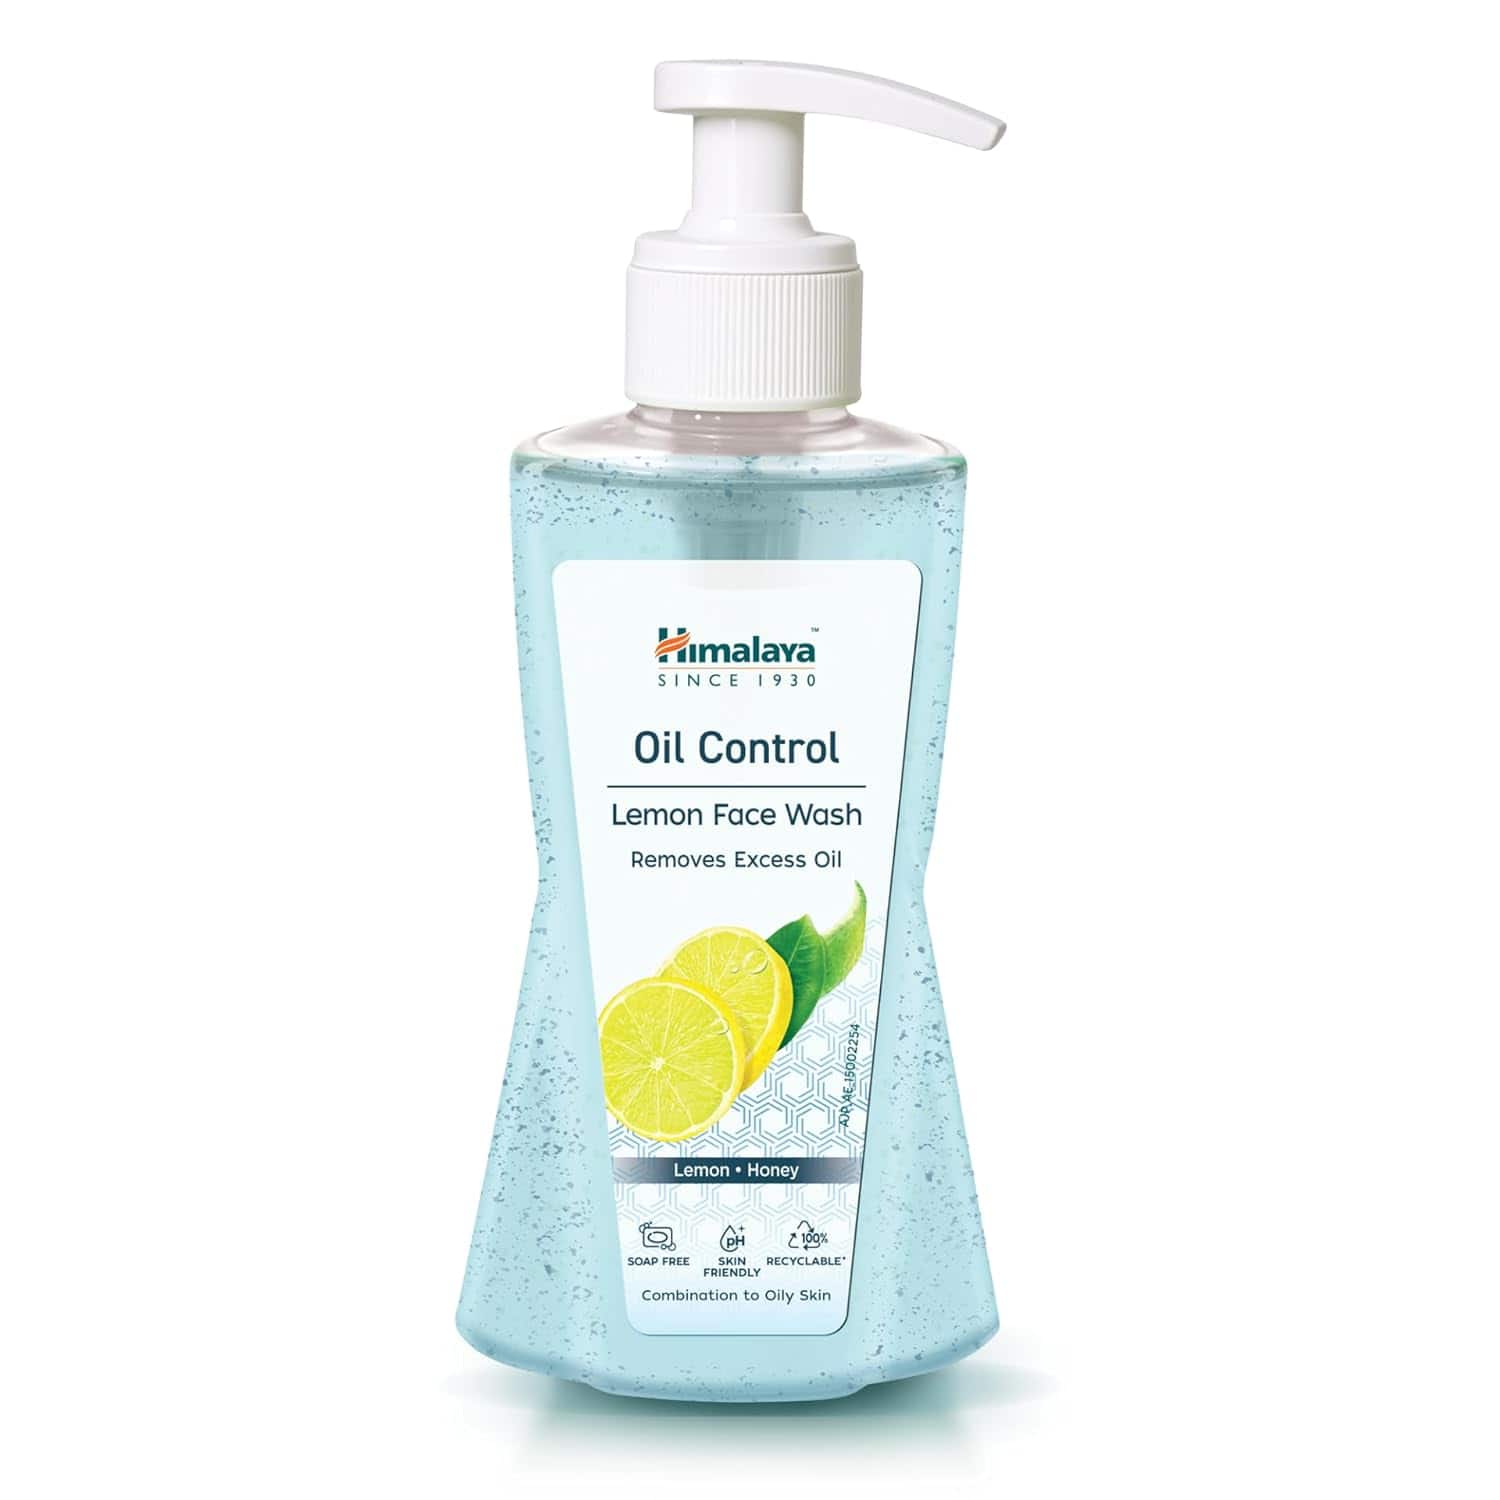 Himalaya Oil Clear Lemon Face Wash, 200ml